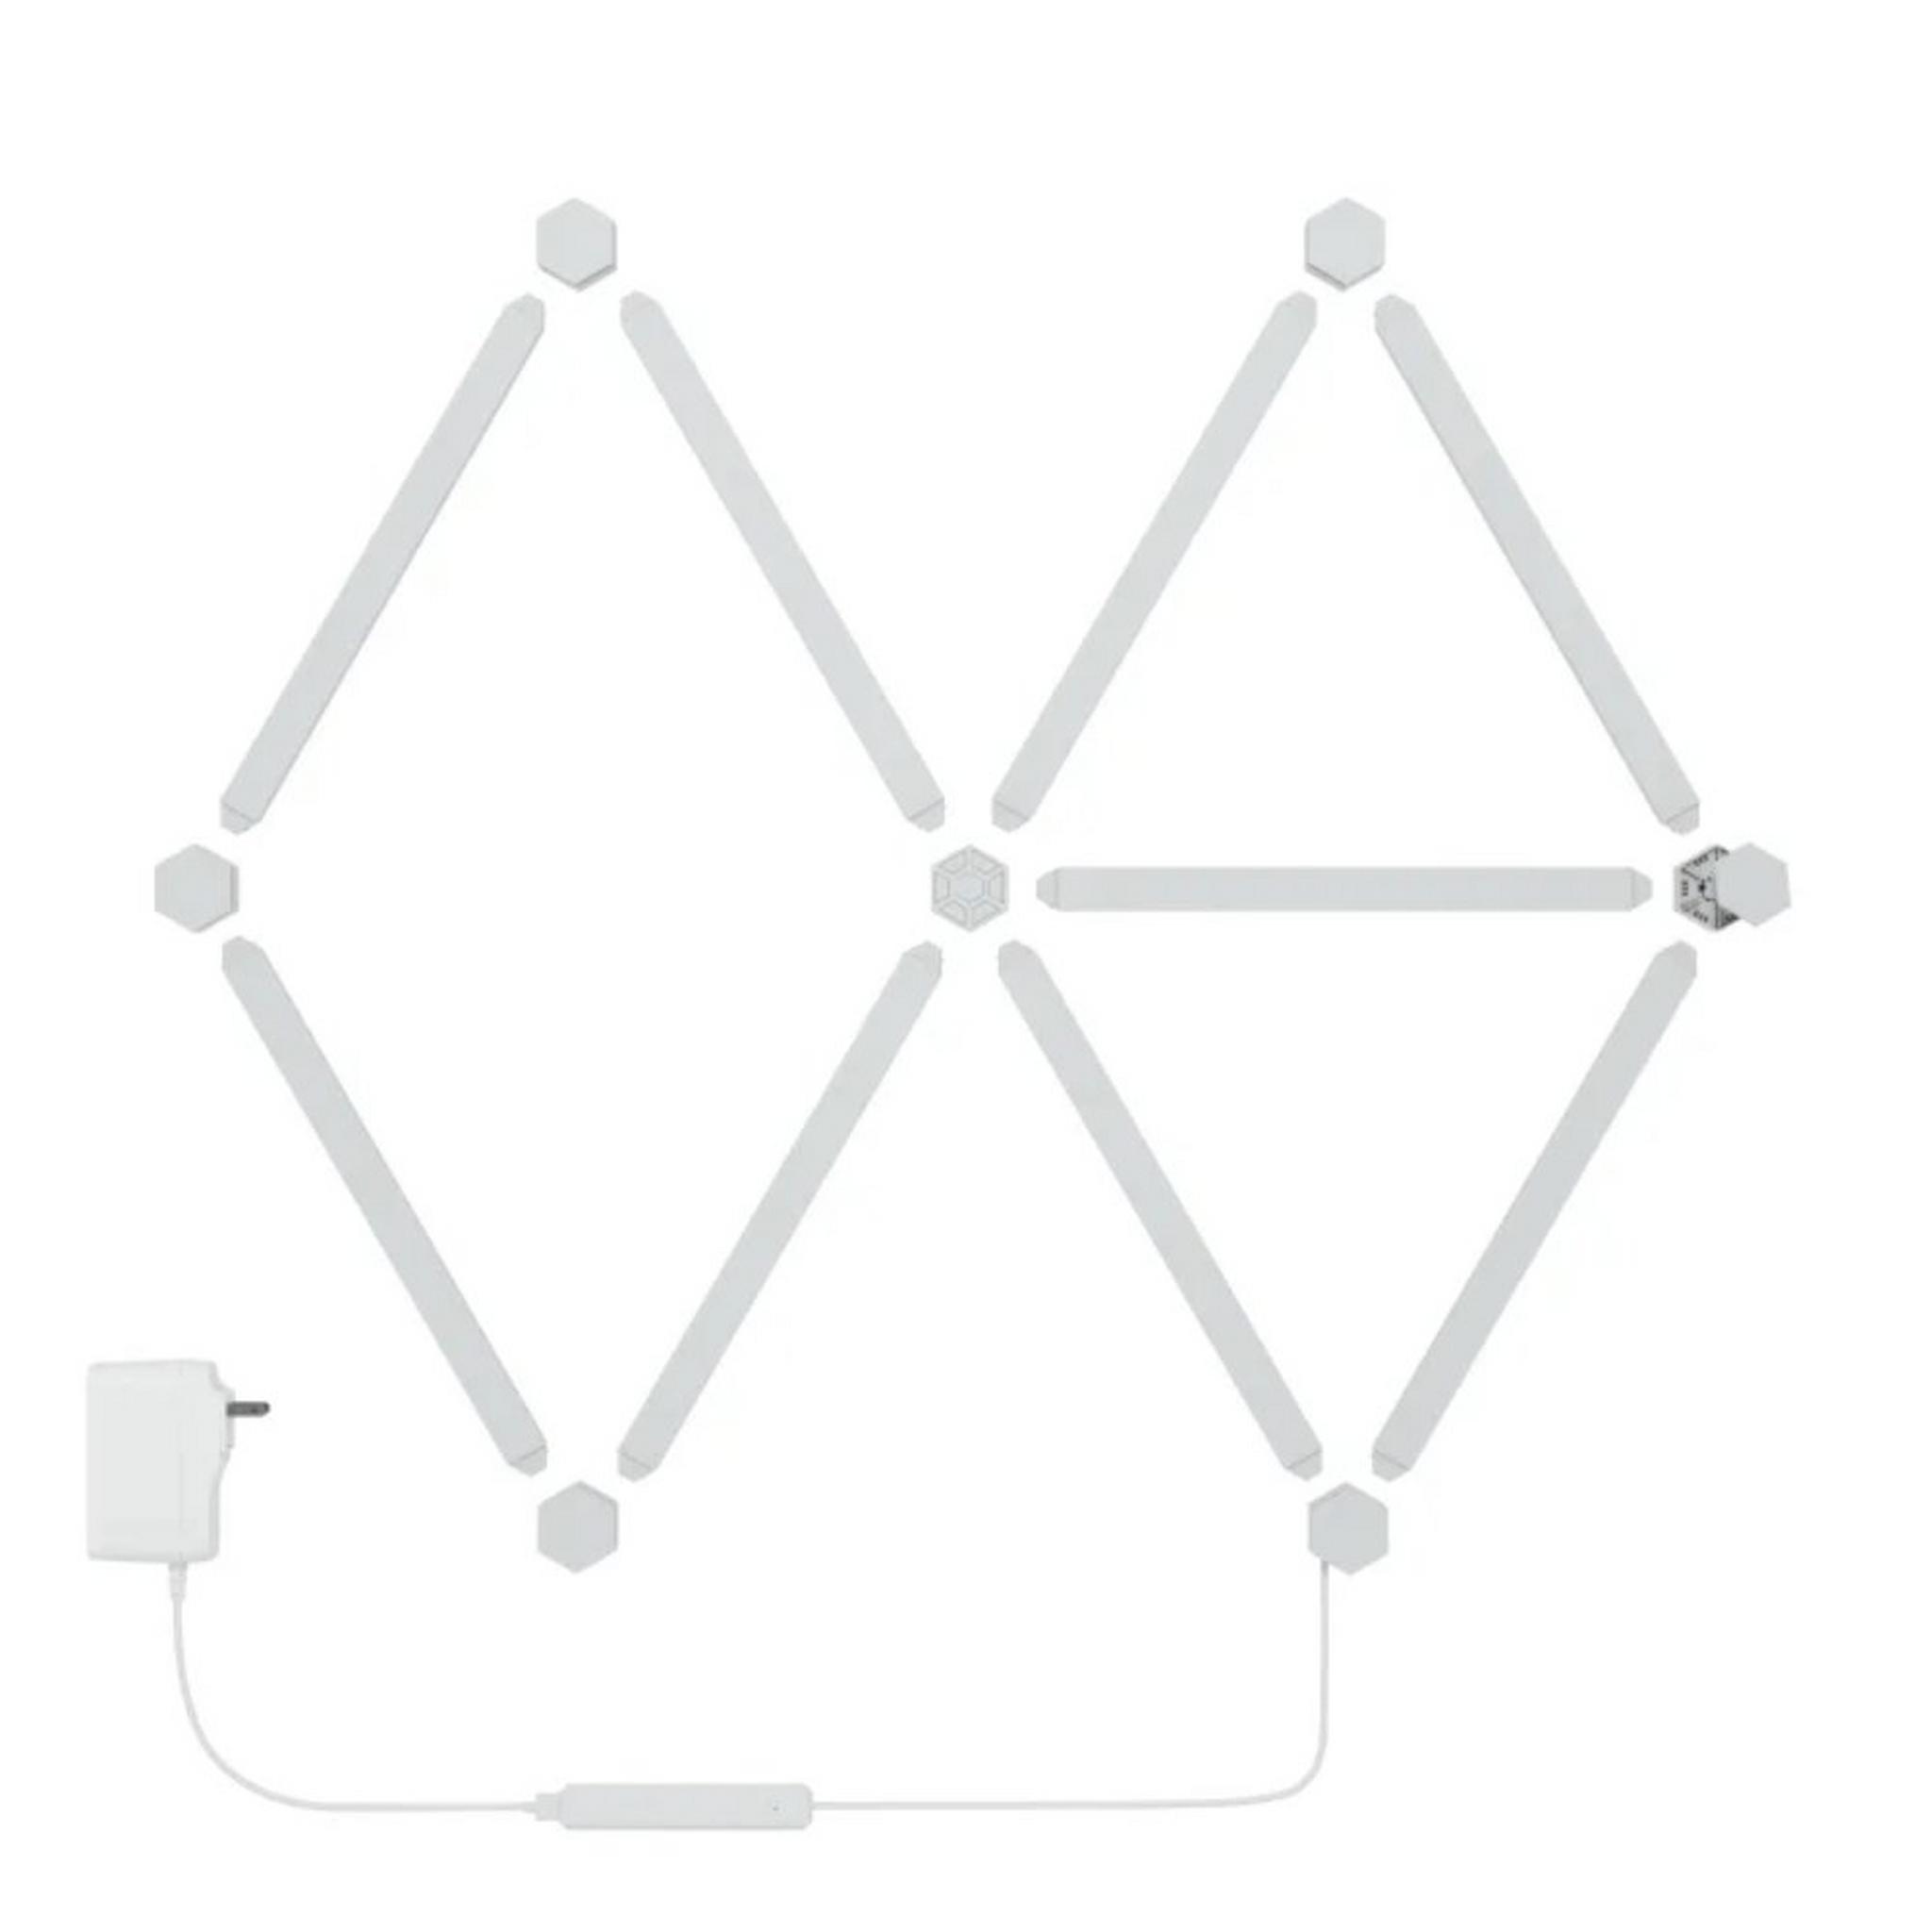 Nanoleaf Lines 9 Packs Starter Kit - White